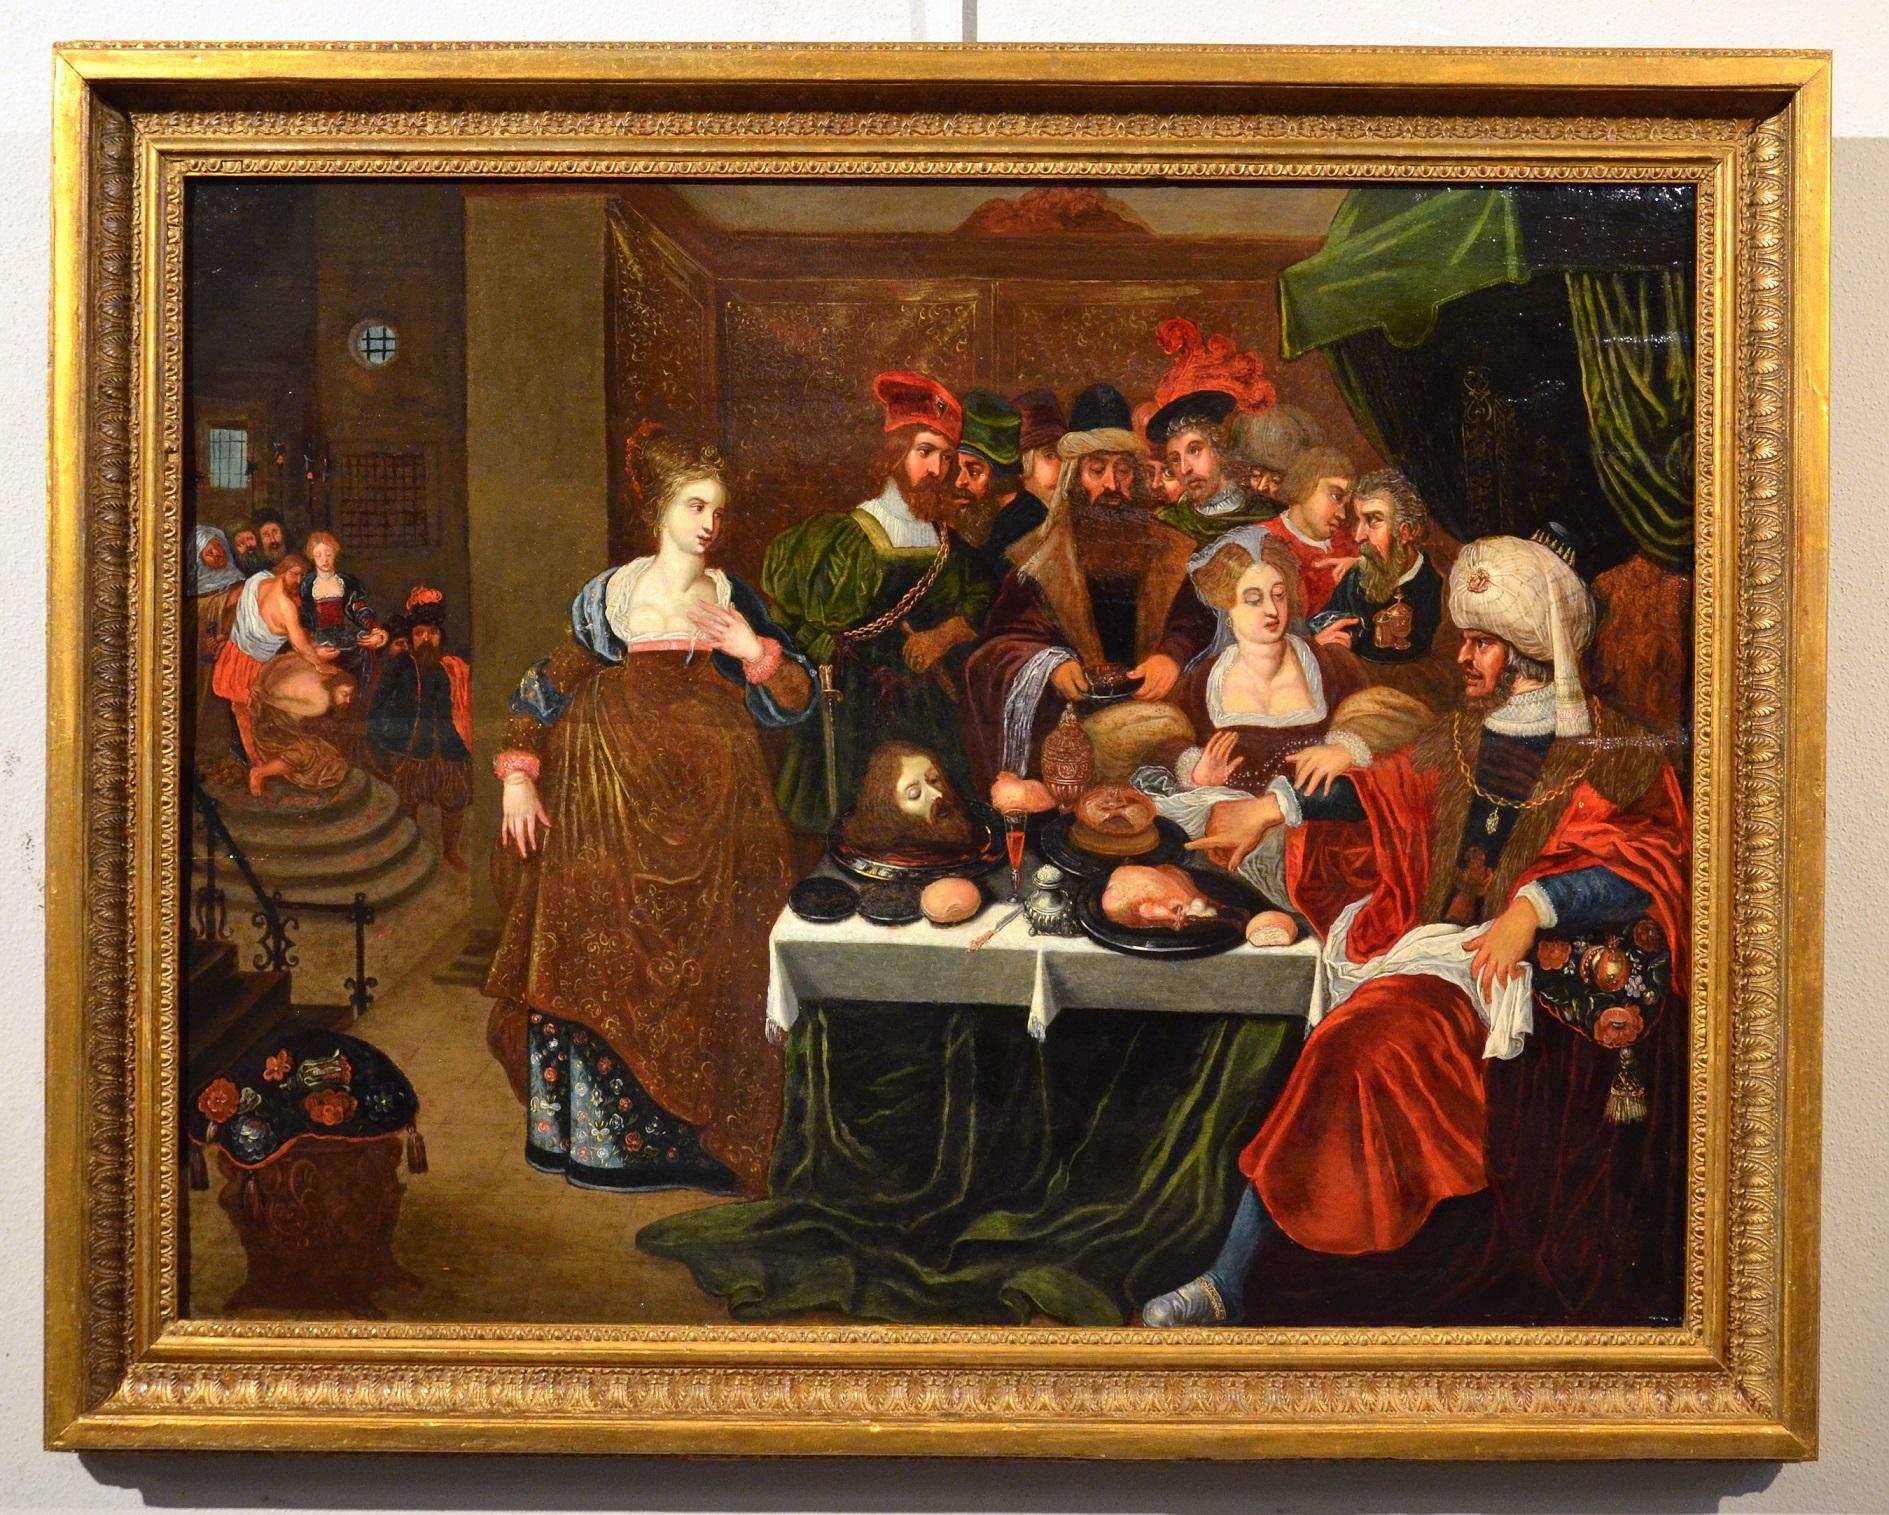 Religiöses Bankett, Van Den Hoecke zugeschrieben Van Den Hoecke, Ölgemälde auf Tisch, Alter Meister, 17. Jahrhundert (Alte Meister), Painting, von Gaspar van den Hoecke (Antwerp, 1585 - 1648)